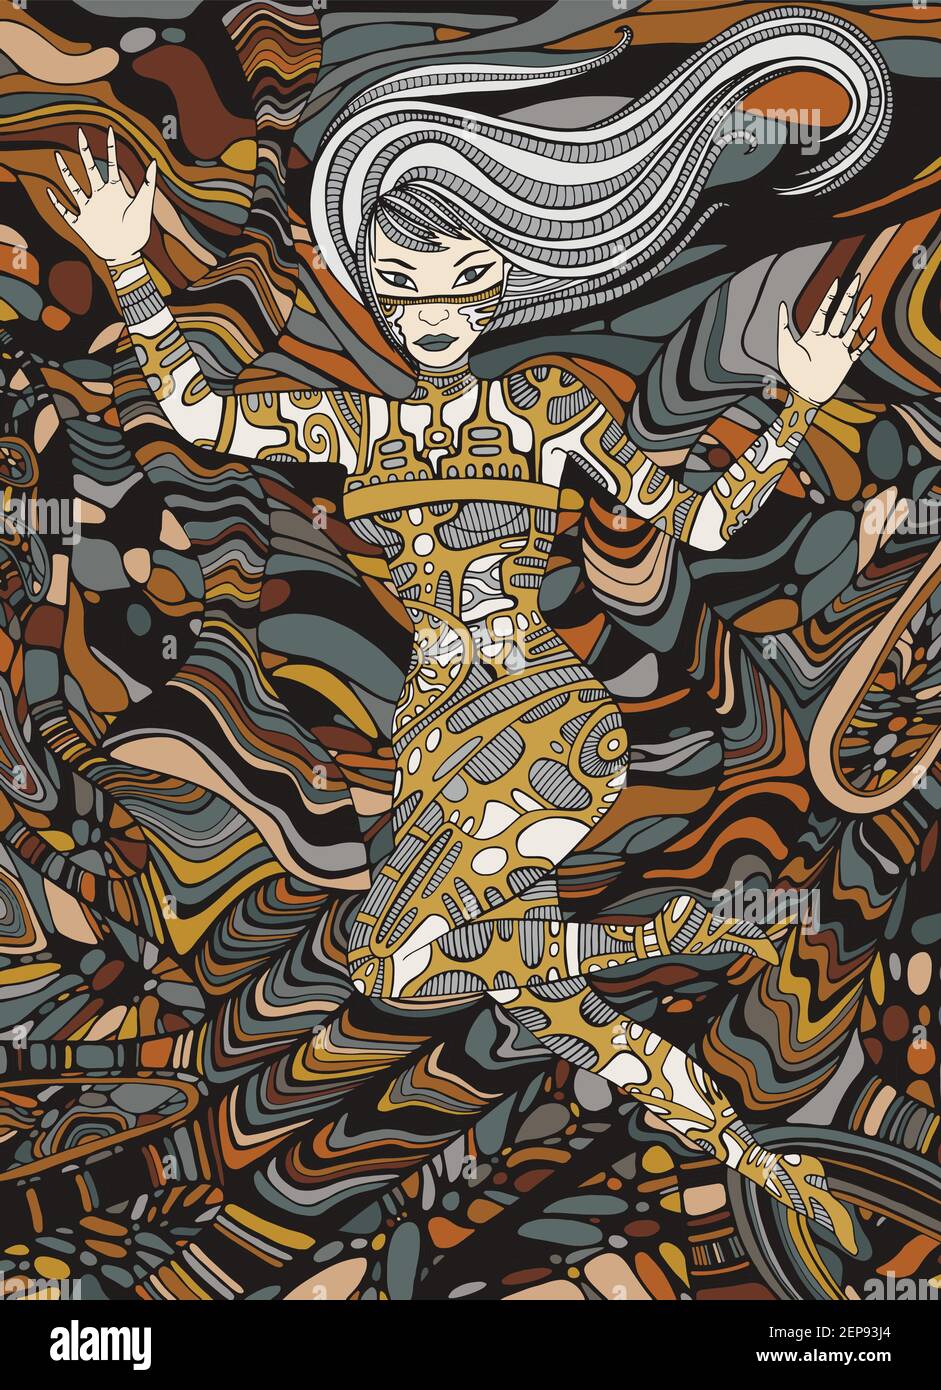 Steampunk girl art surréaliste fantastique dandle style femme. Illustration fantaisie vectorisée à la main rouille couleurs métalliques. Illustration de Vecteur